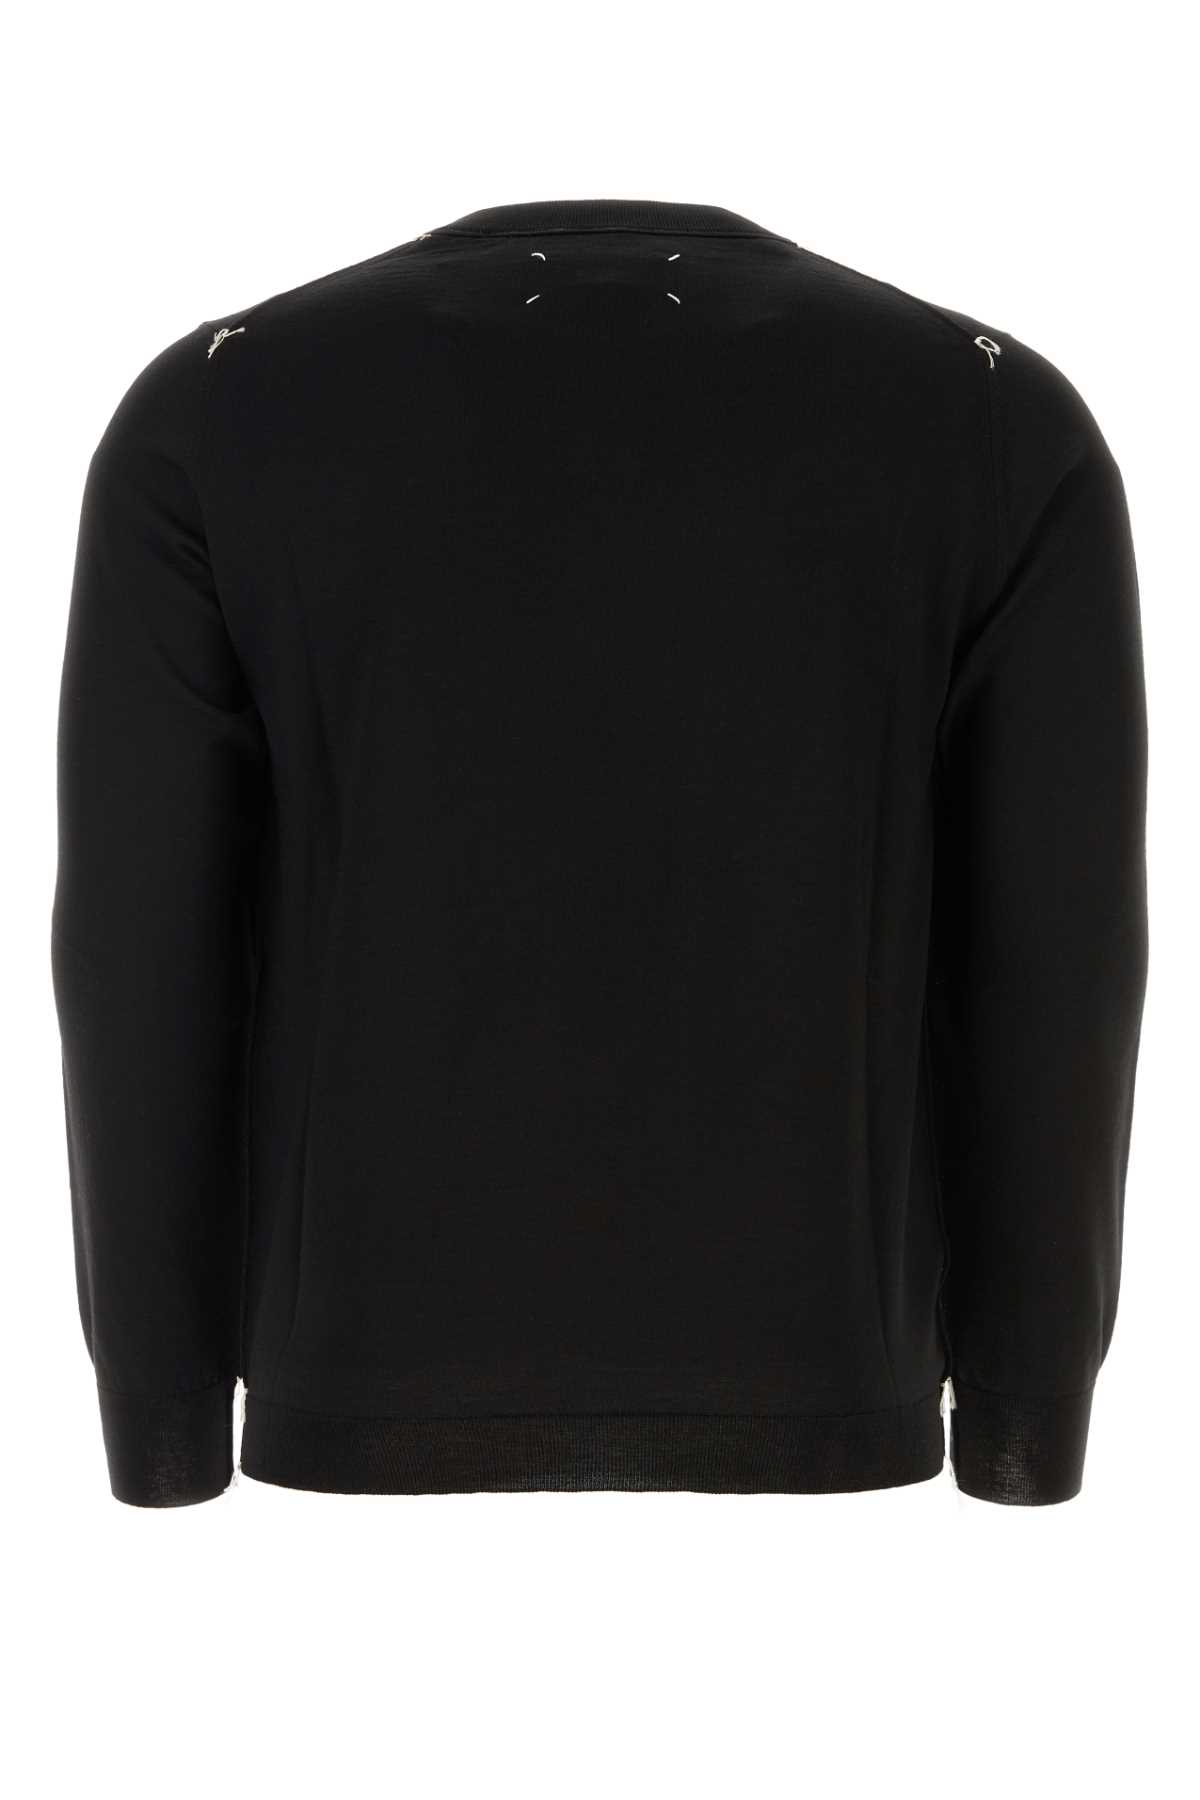 Shop Maison Margiela Black Wool Blend Sweater In 900f